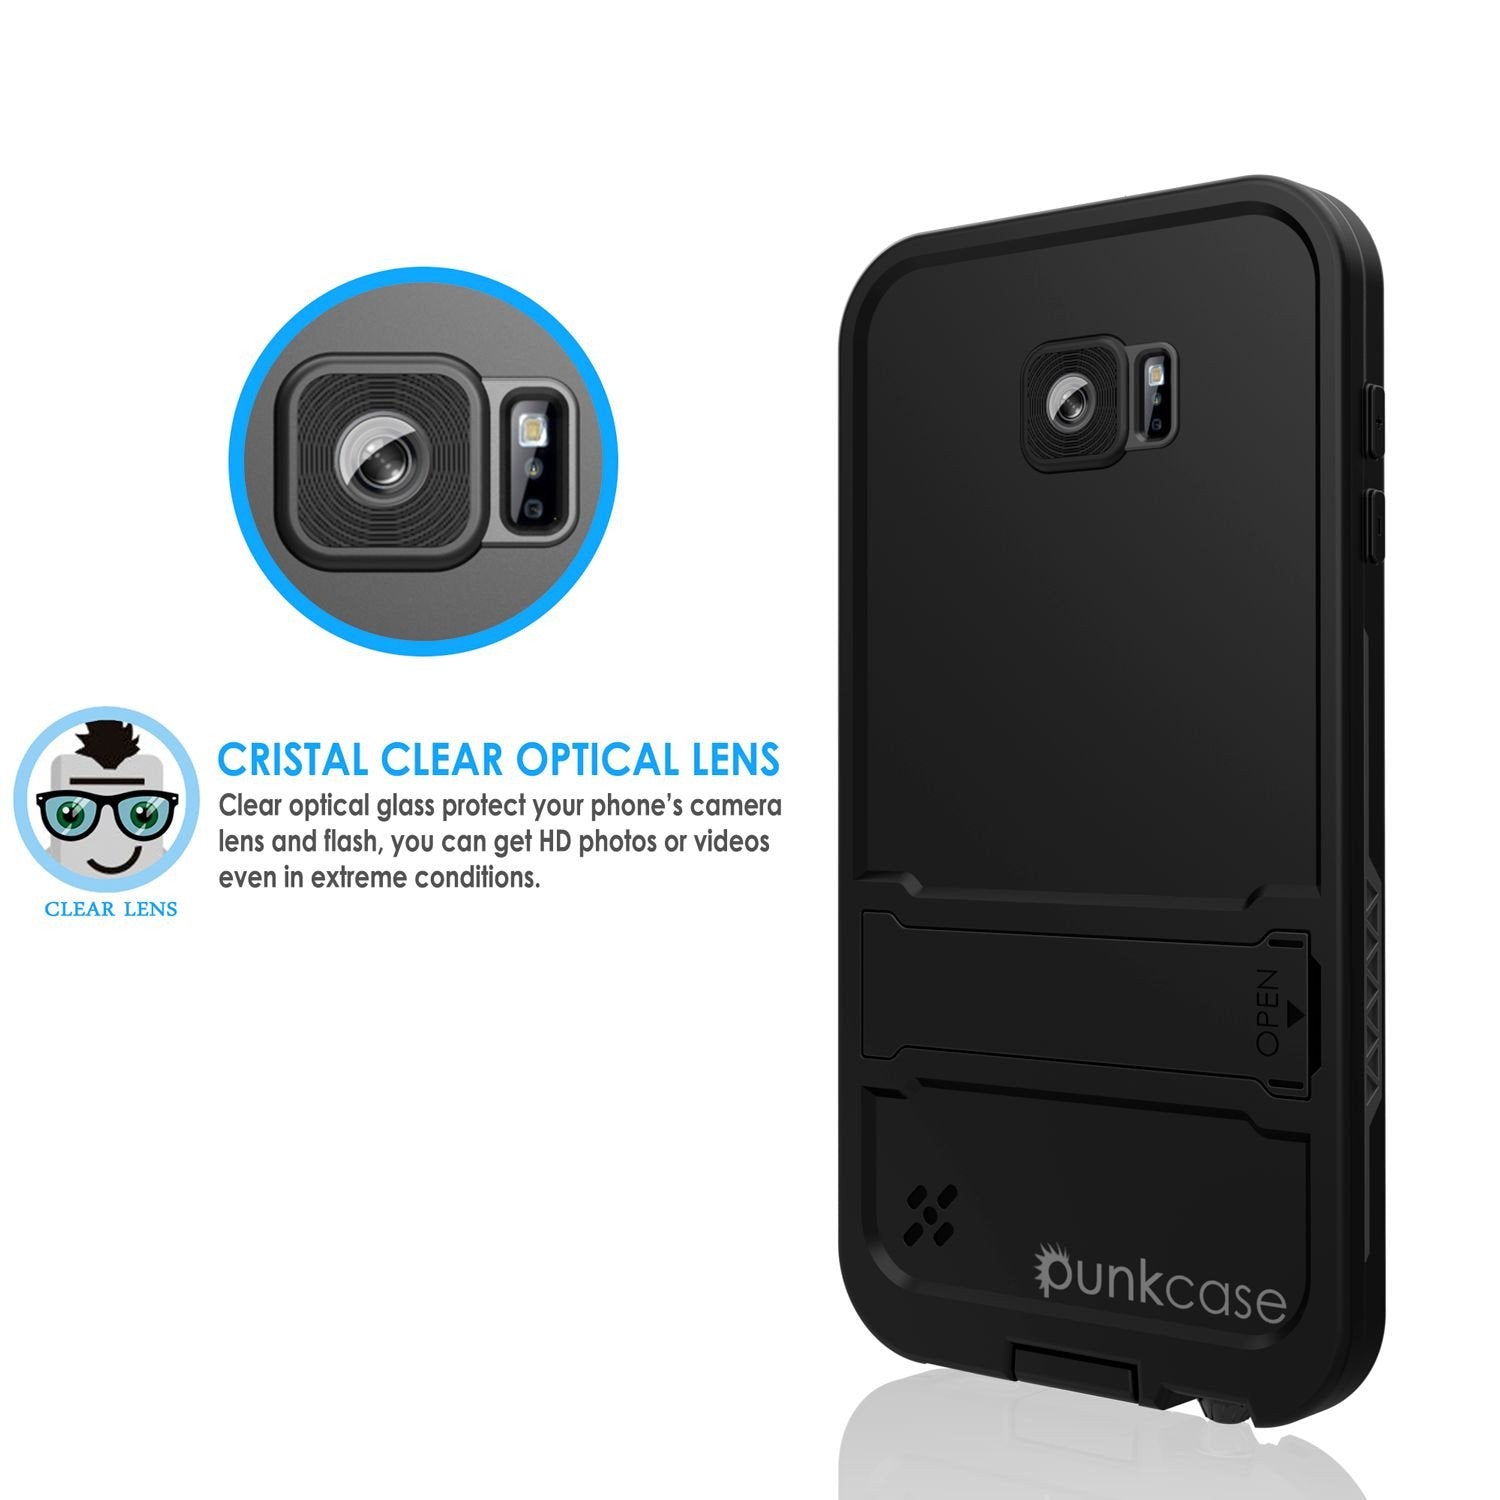 Galaxy S6 Waterproof Case, Punkcase SpikeStar Black Water/Shock/Dirt/Snow Proof | Lifetime Warranty - PunkCase NZ